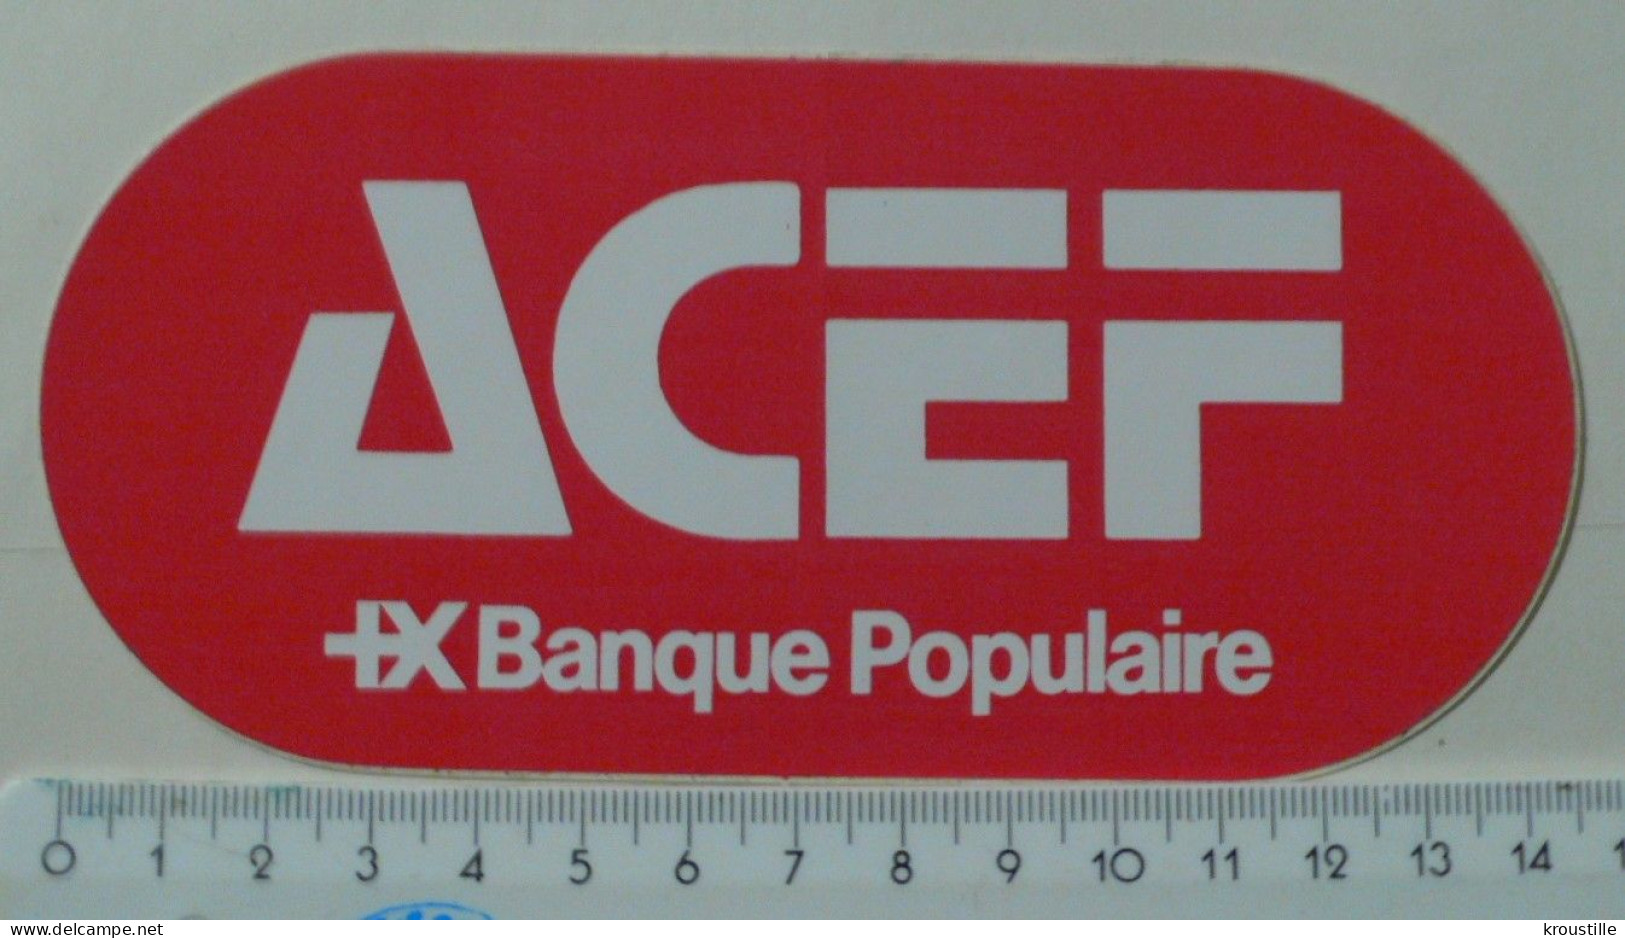 AUTOCOLLANT ACEF - BANQUE POPULAIRE - Aufkleber